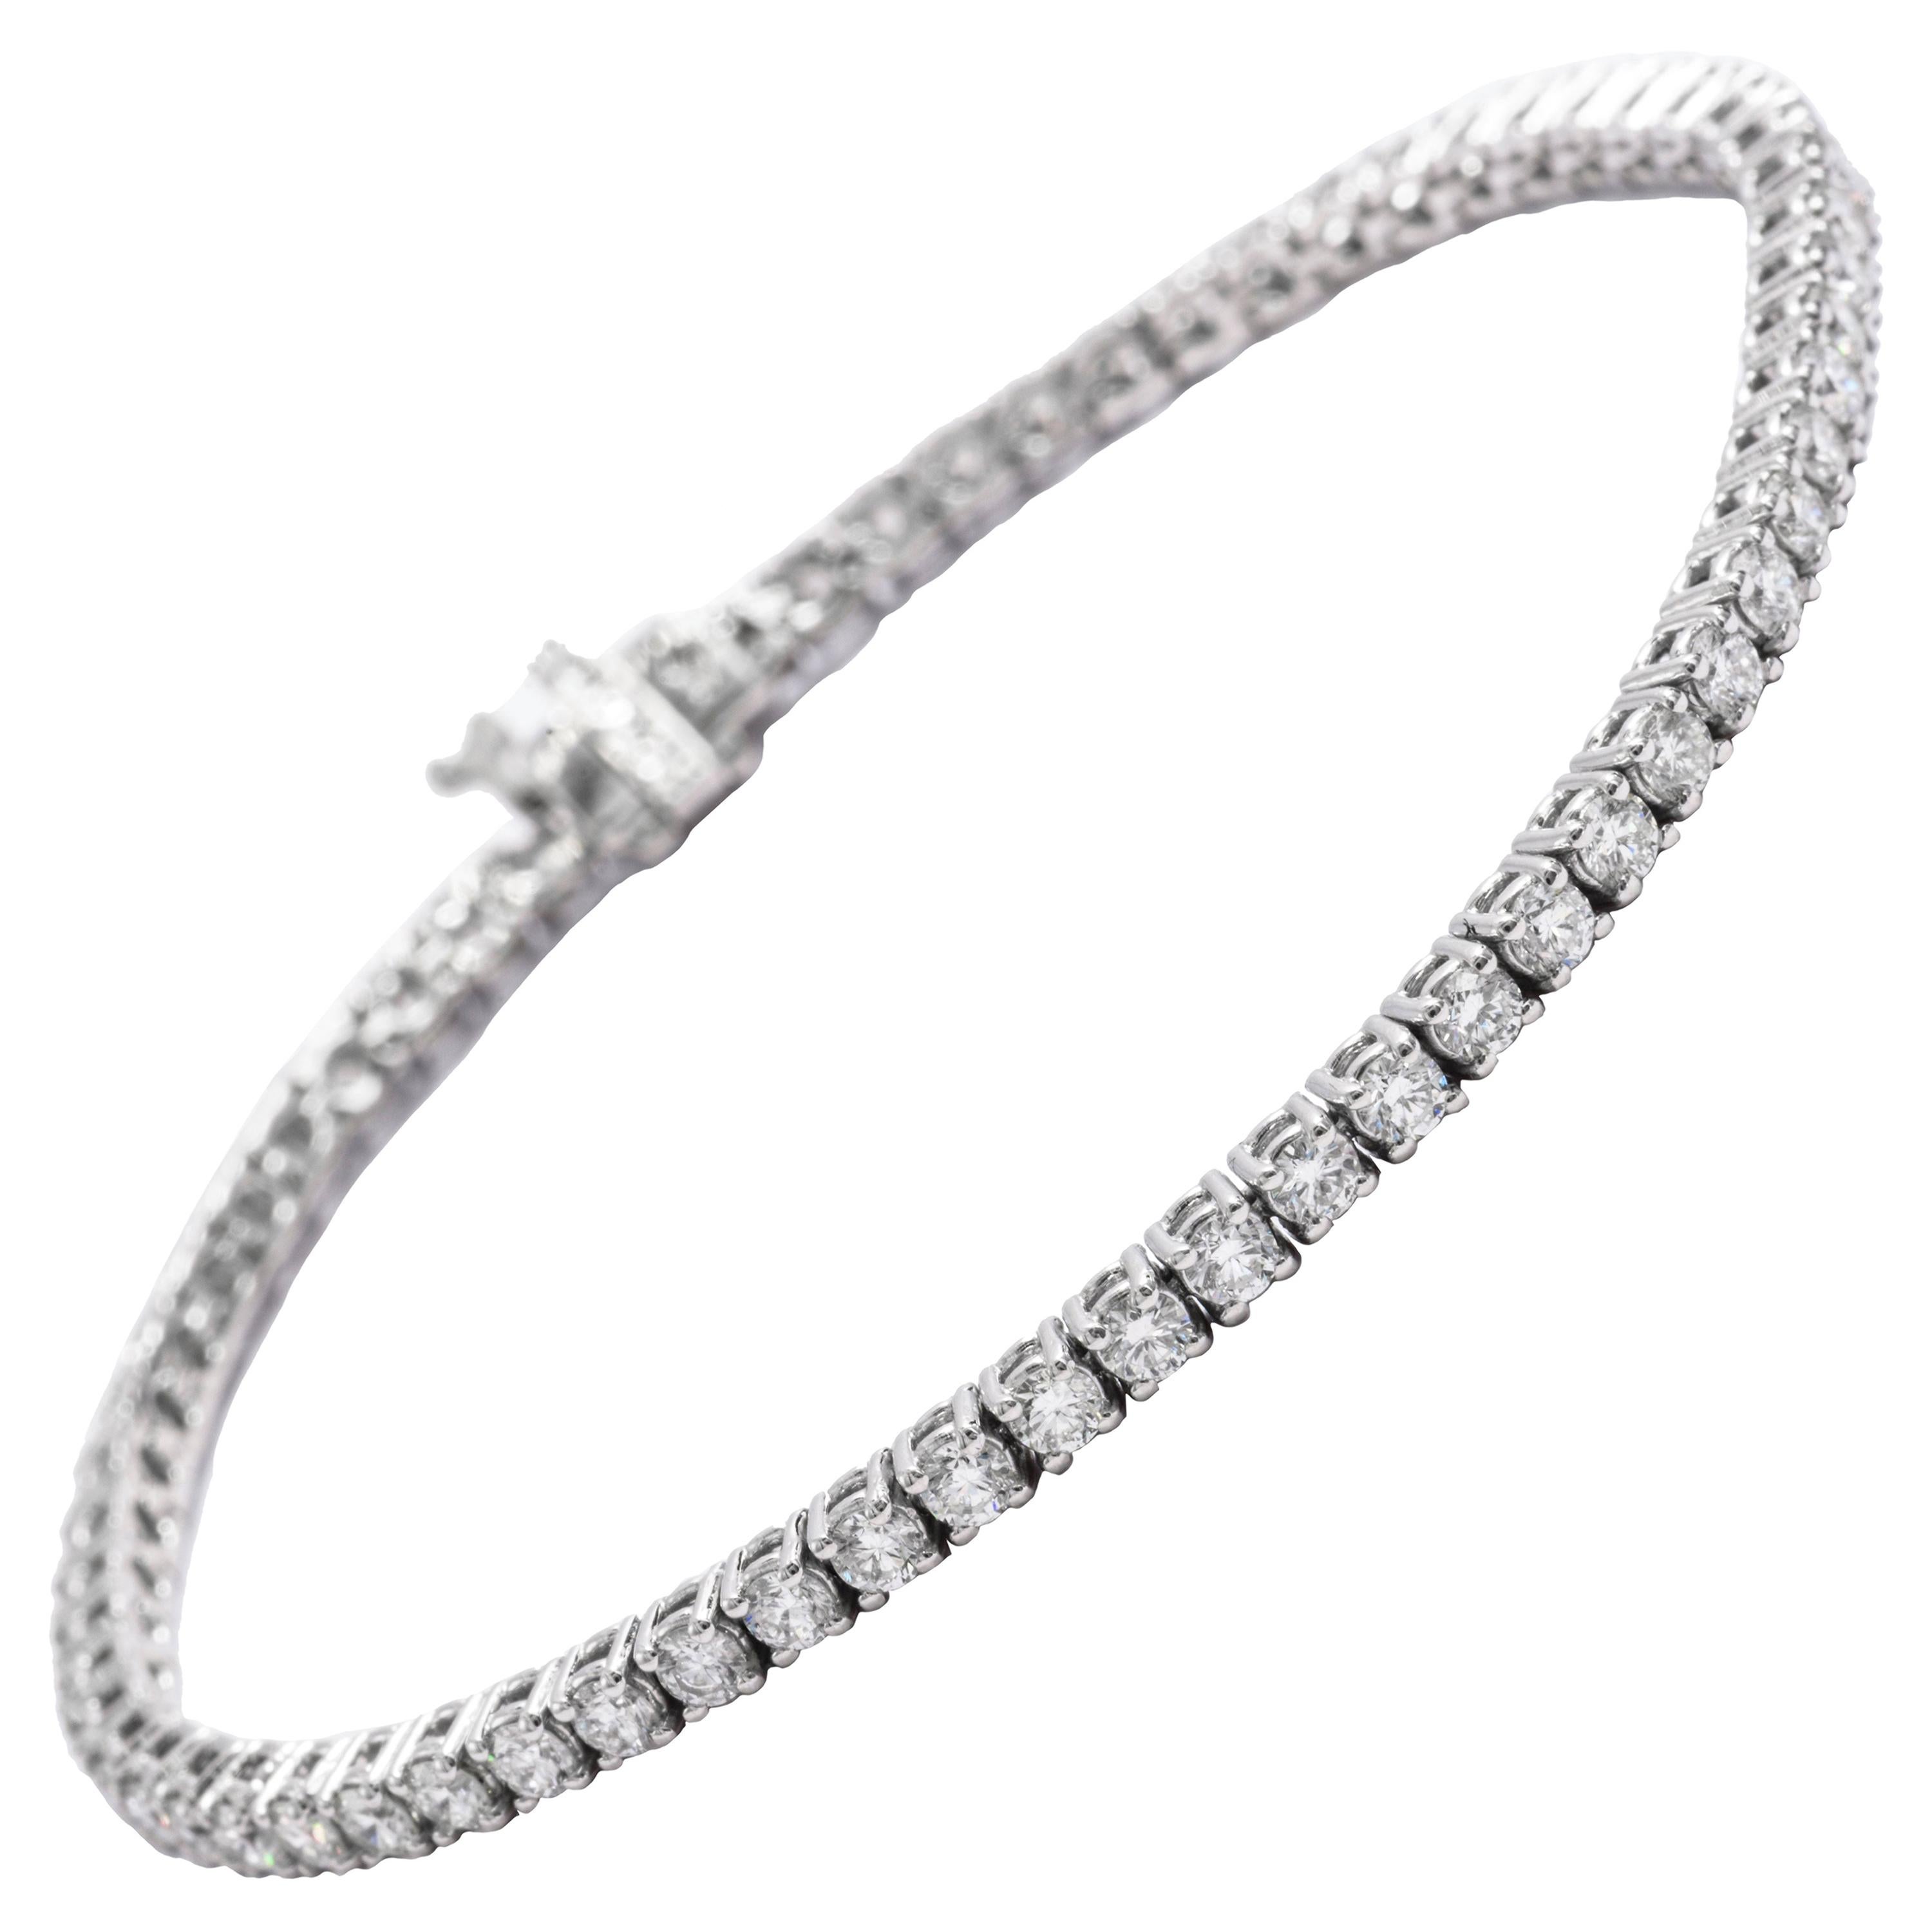 Bracelet tennis en or blanc 14 carats avec diamants de 4 carats, d'une valeur moyenne de 0,07 carat